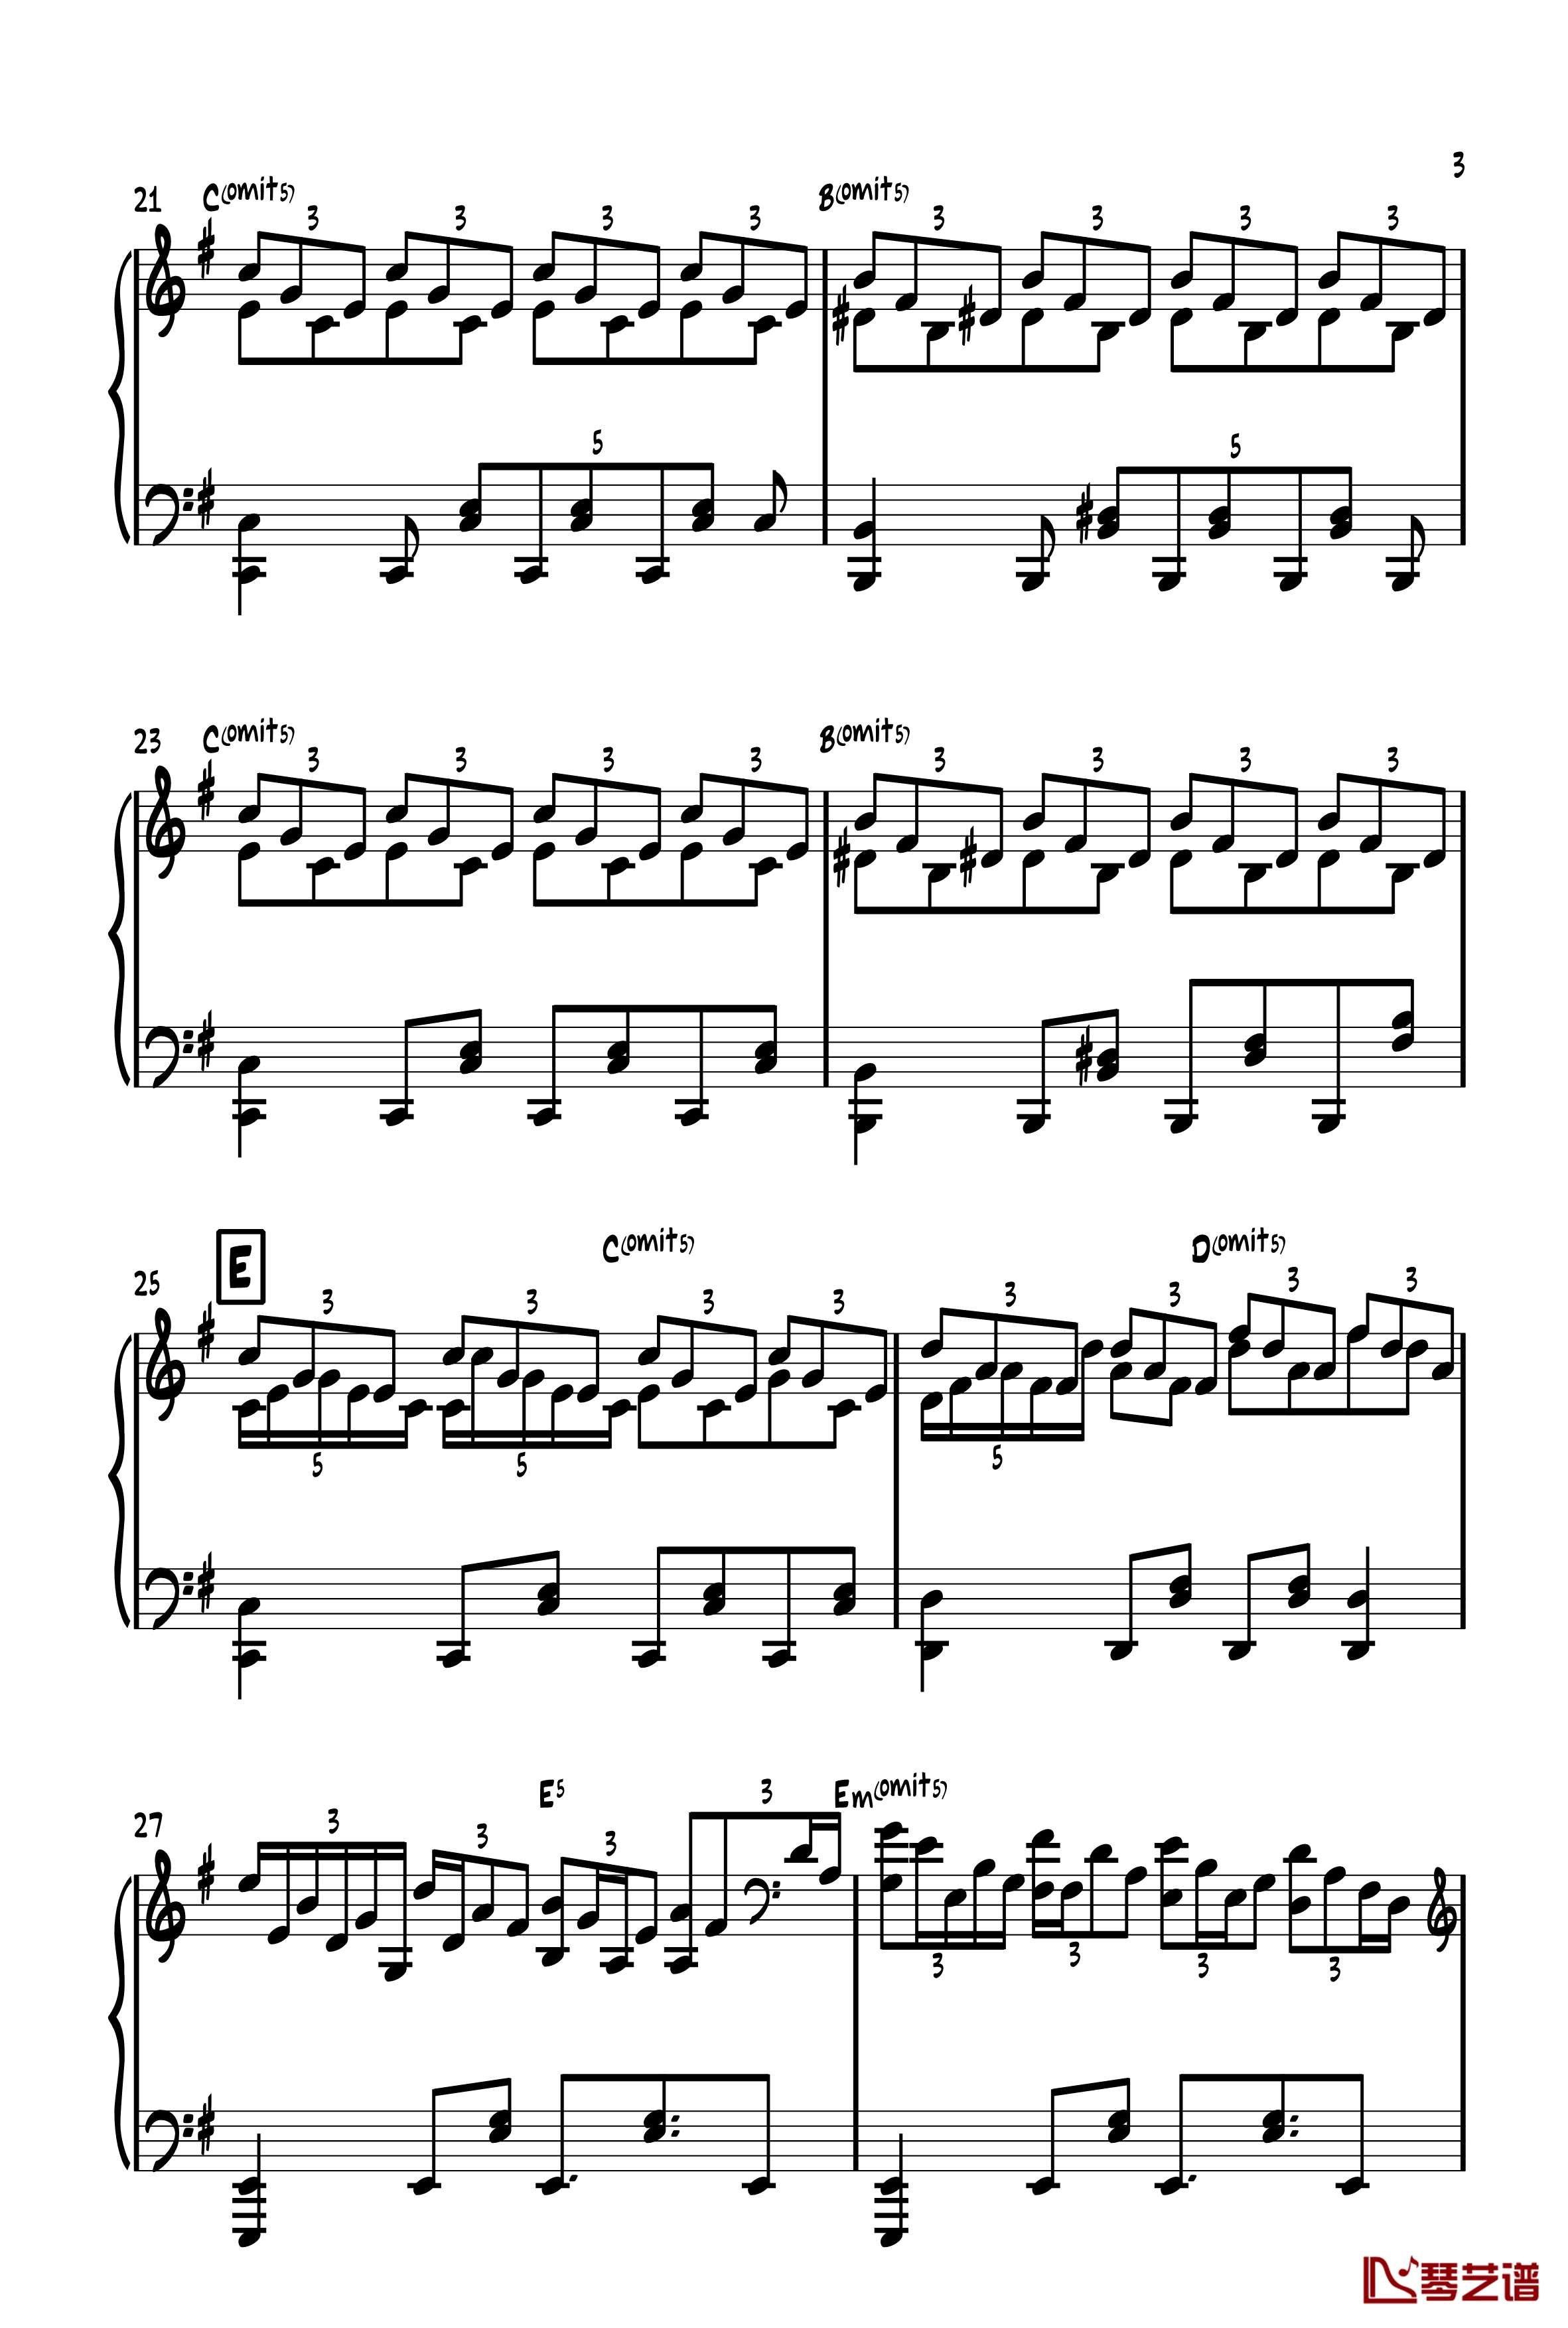 旅人1970钢琴谱-ヴォヤージュ１９７０-zun3